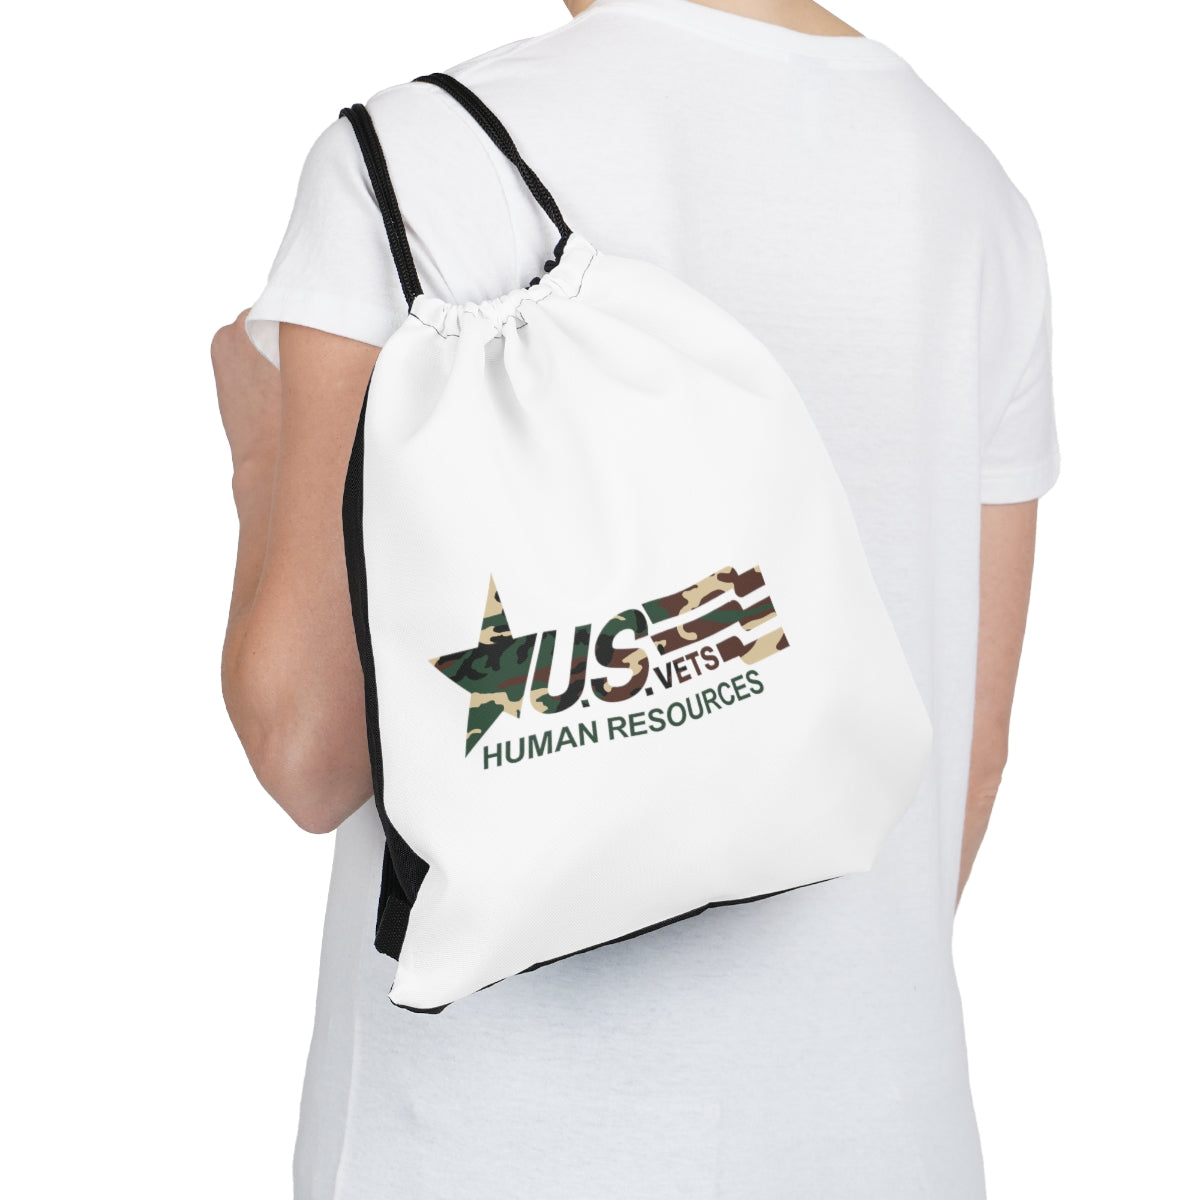 U.S.VETS HR Drawstring Sling Bag / Backpack